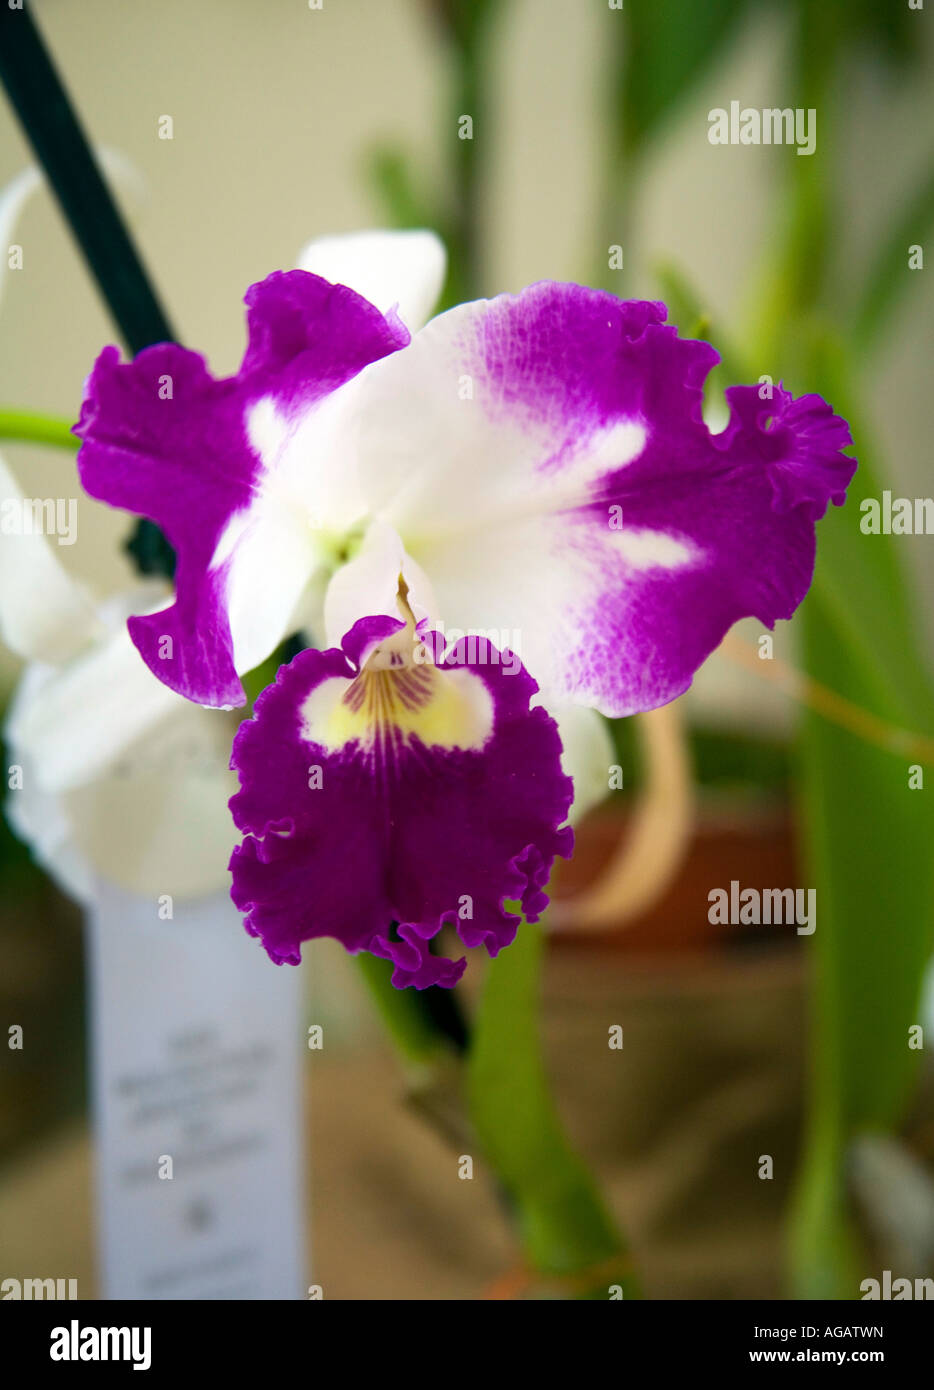 Brassolaelio Cattleya orchid flower Stock Photo